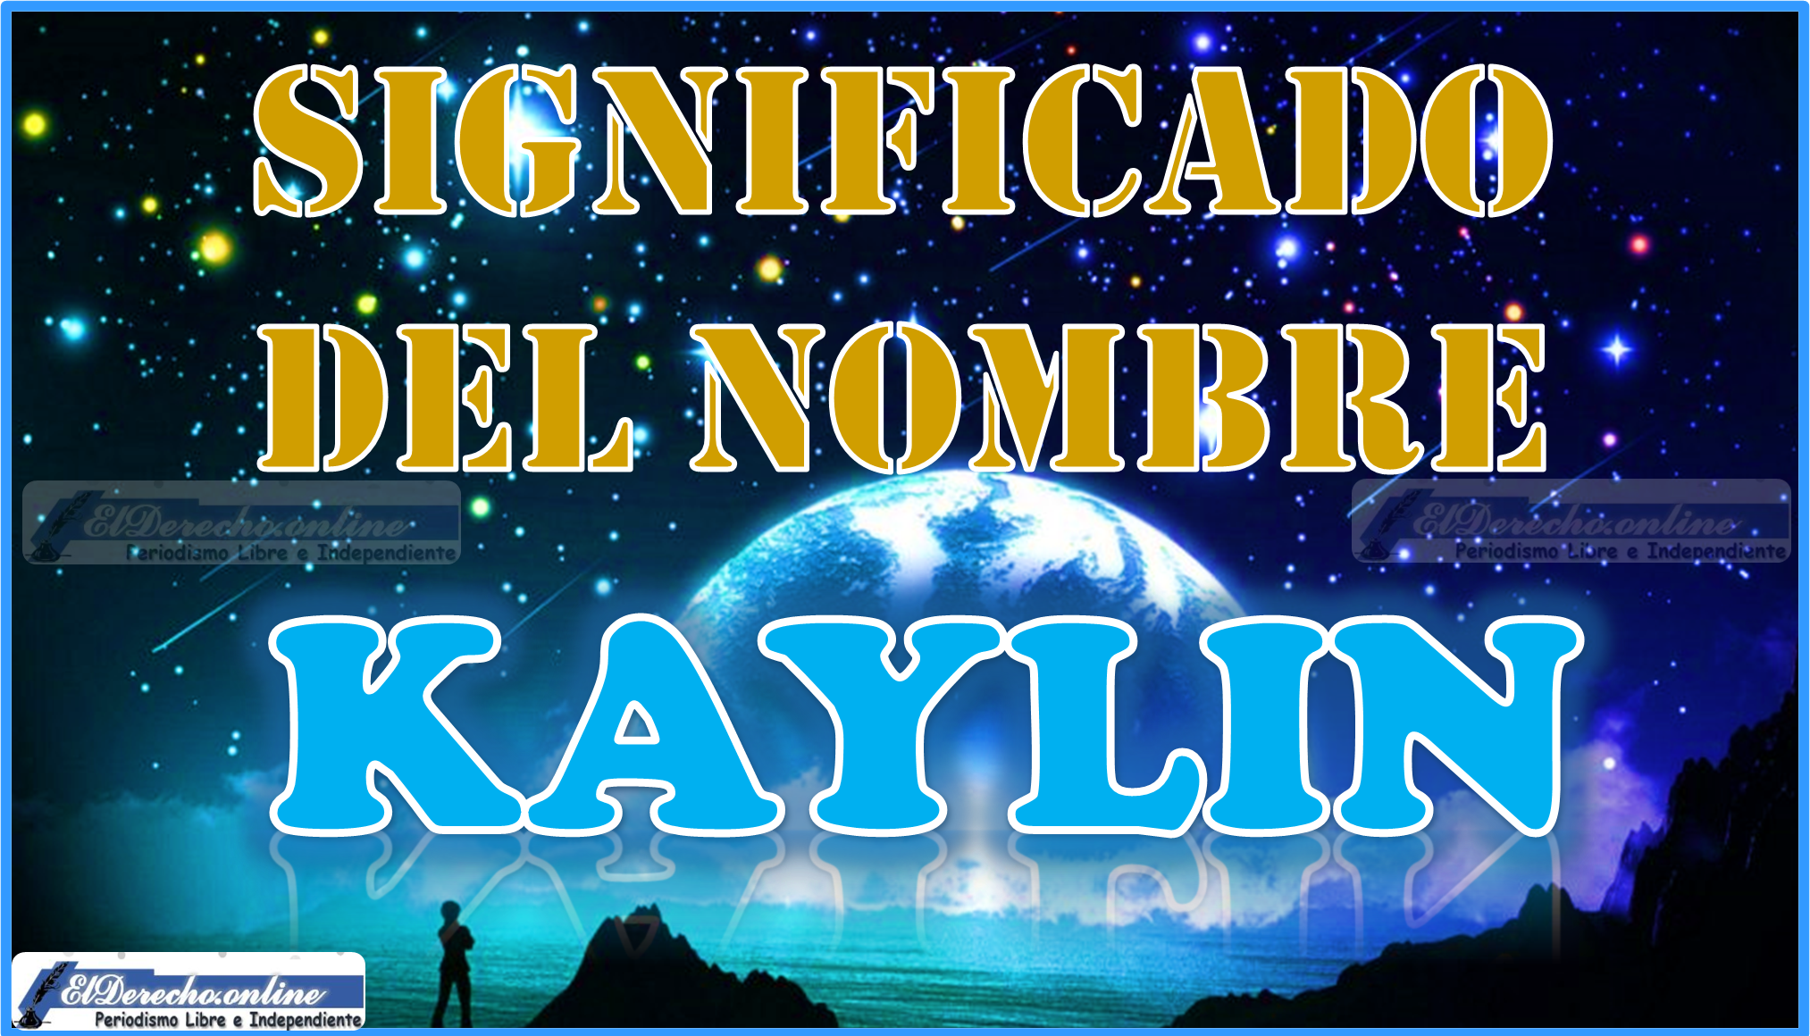 Significado del nombre Kaylin, su origen y más